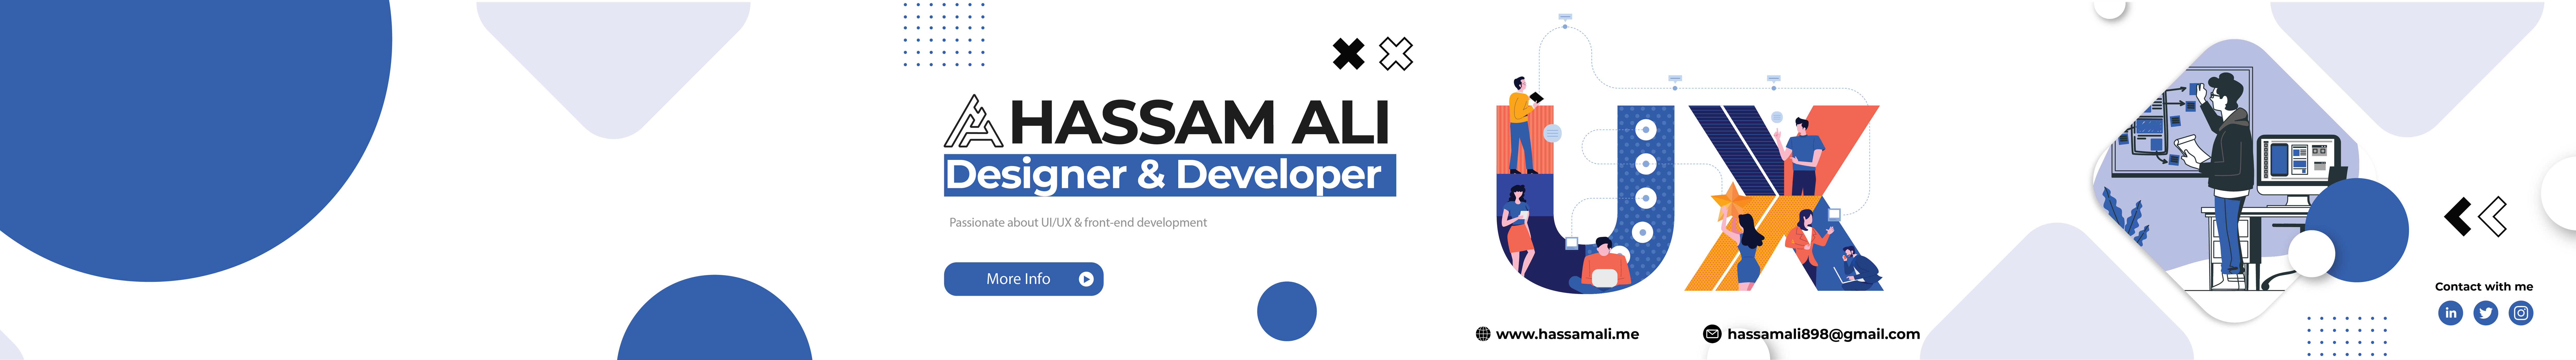 Hassam Ali's profile banner